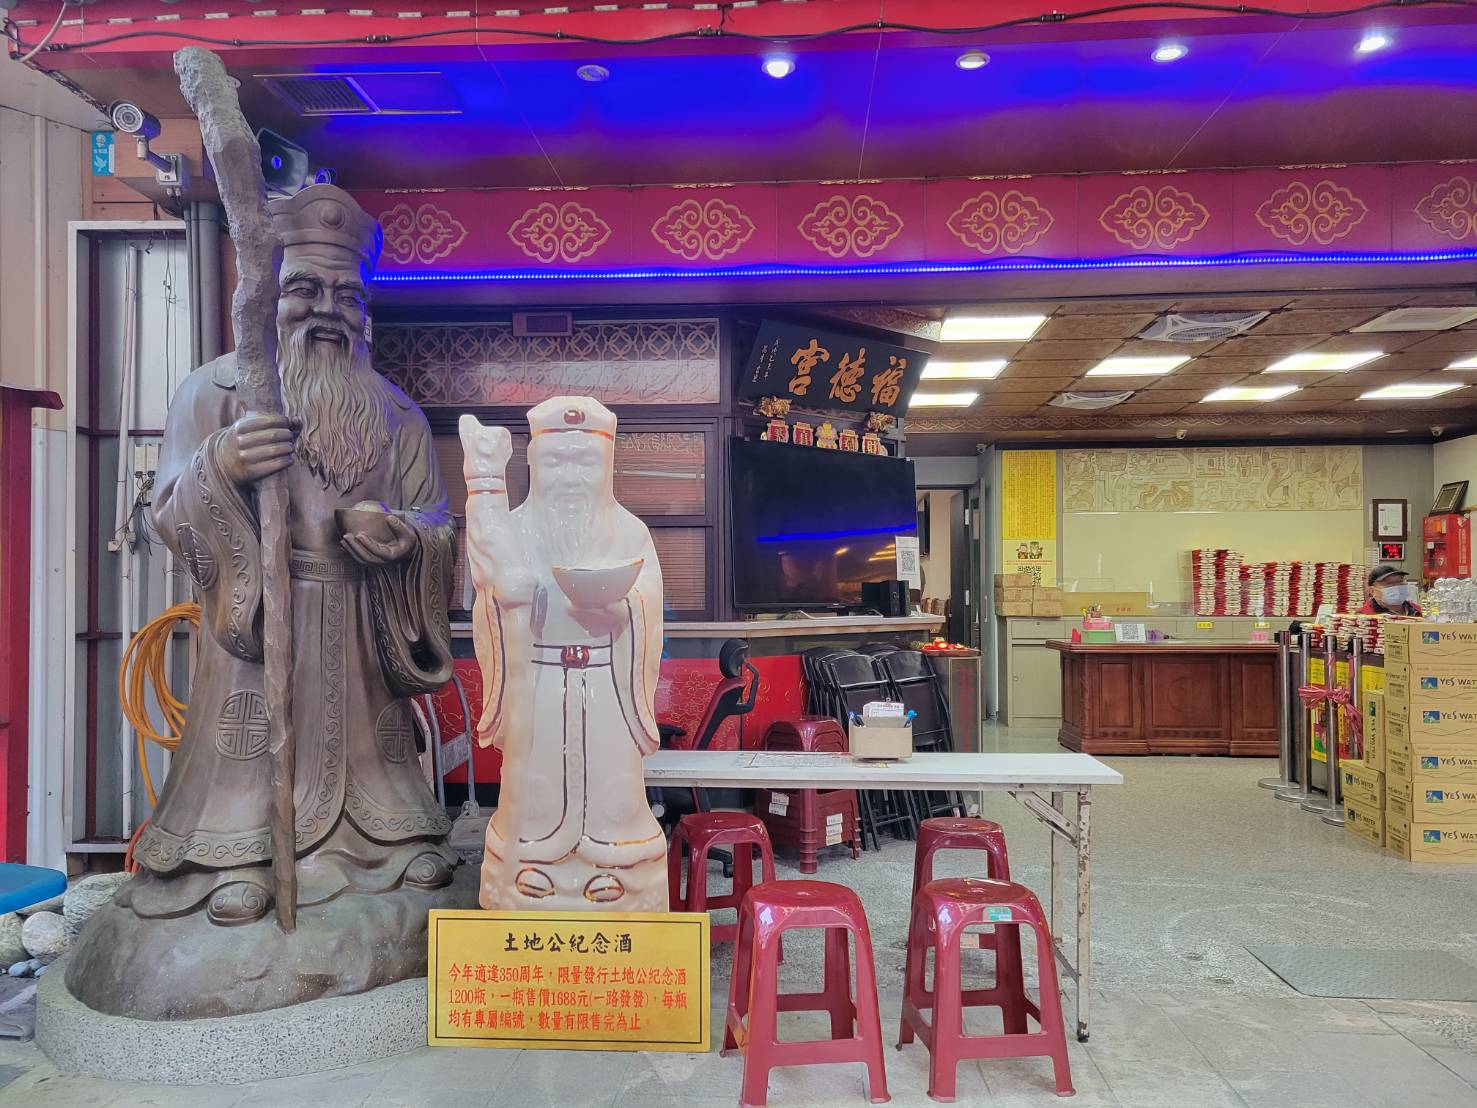 圖片說明：店仔街福德宮是北台灣最老的土地公廟，香火鼎盛、有求必應，也是求財最旺的廟宇。